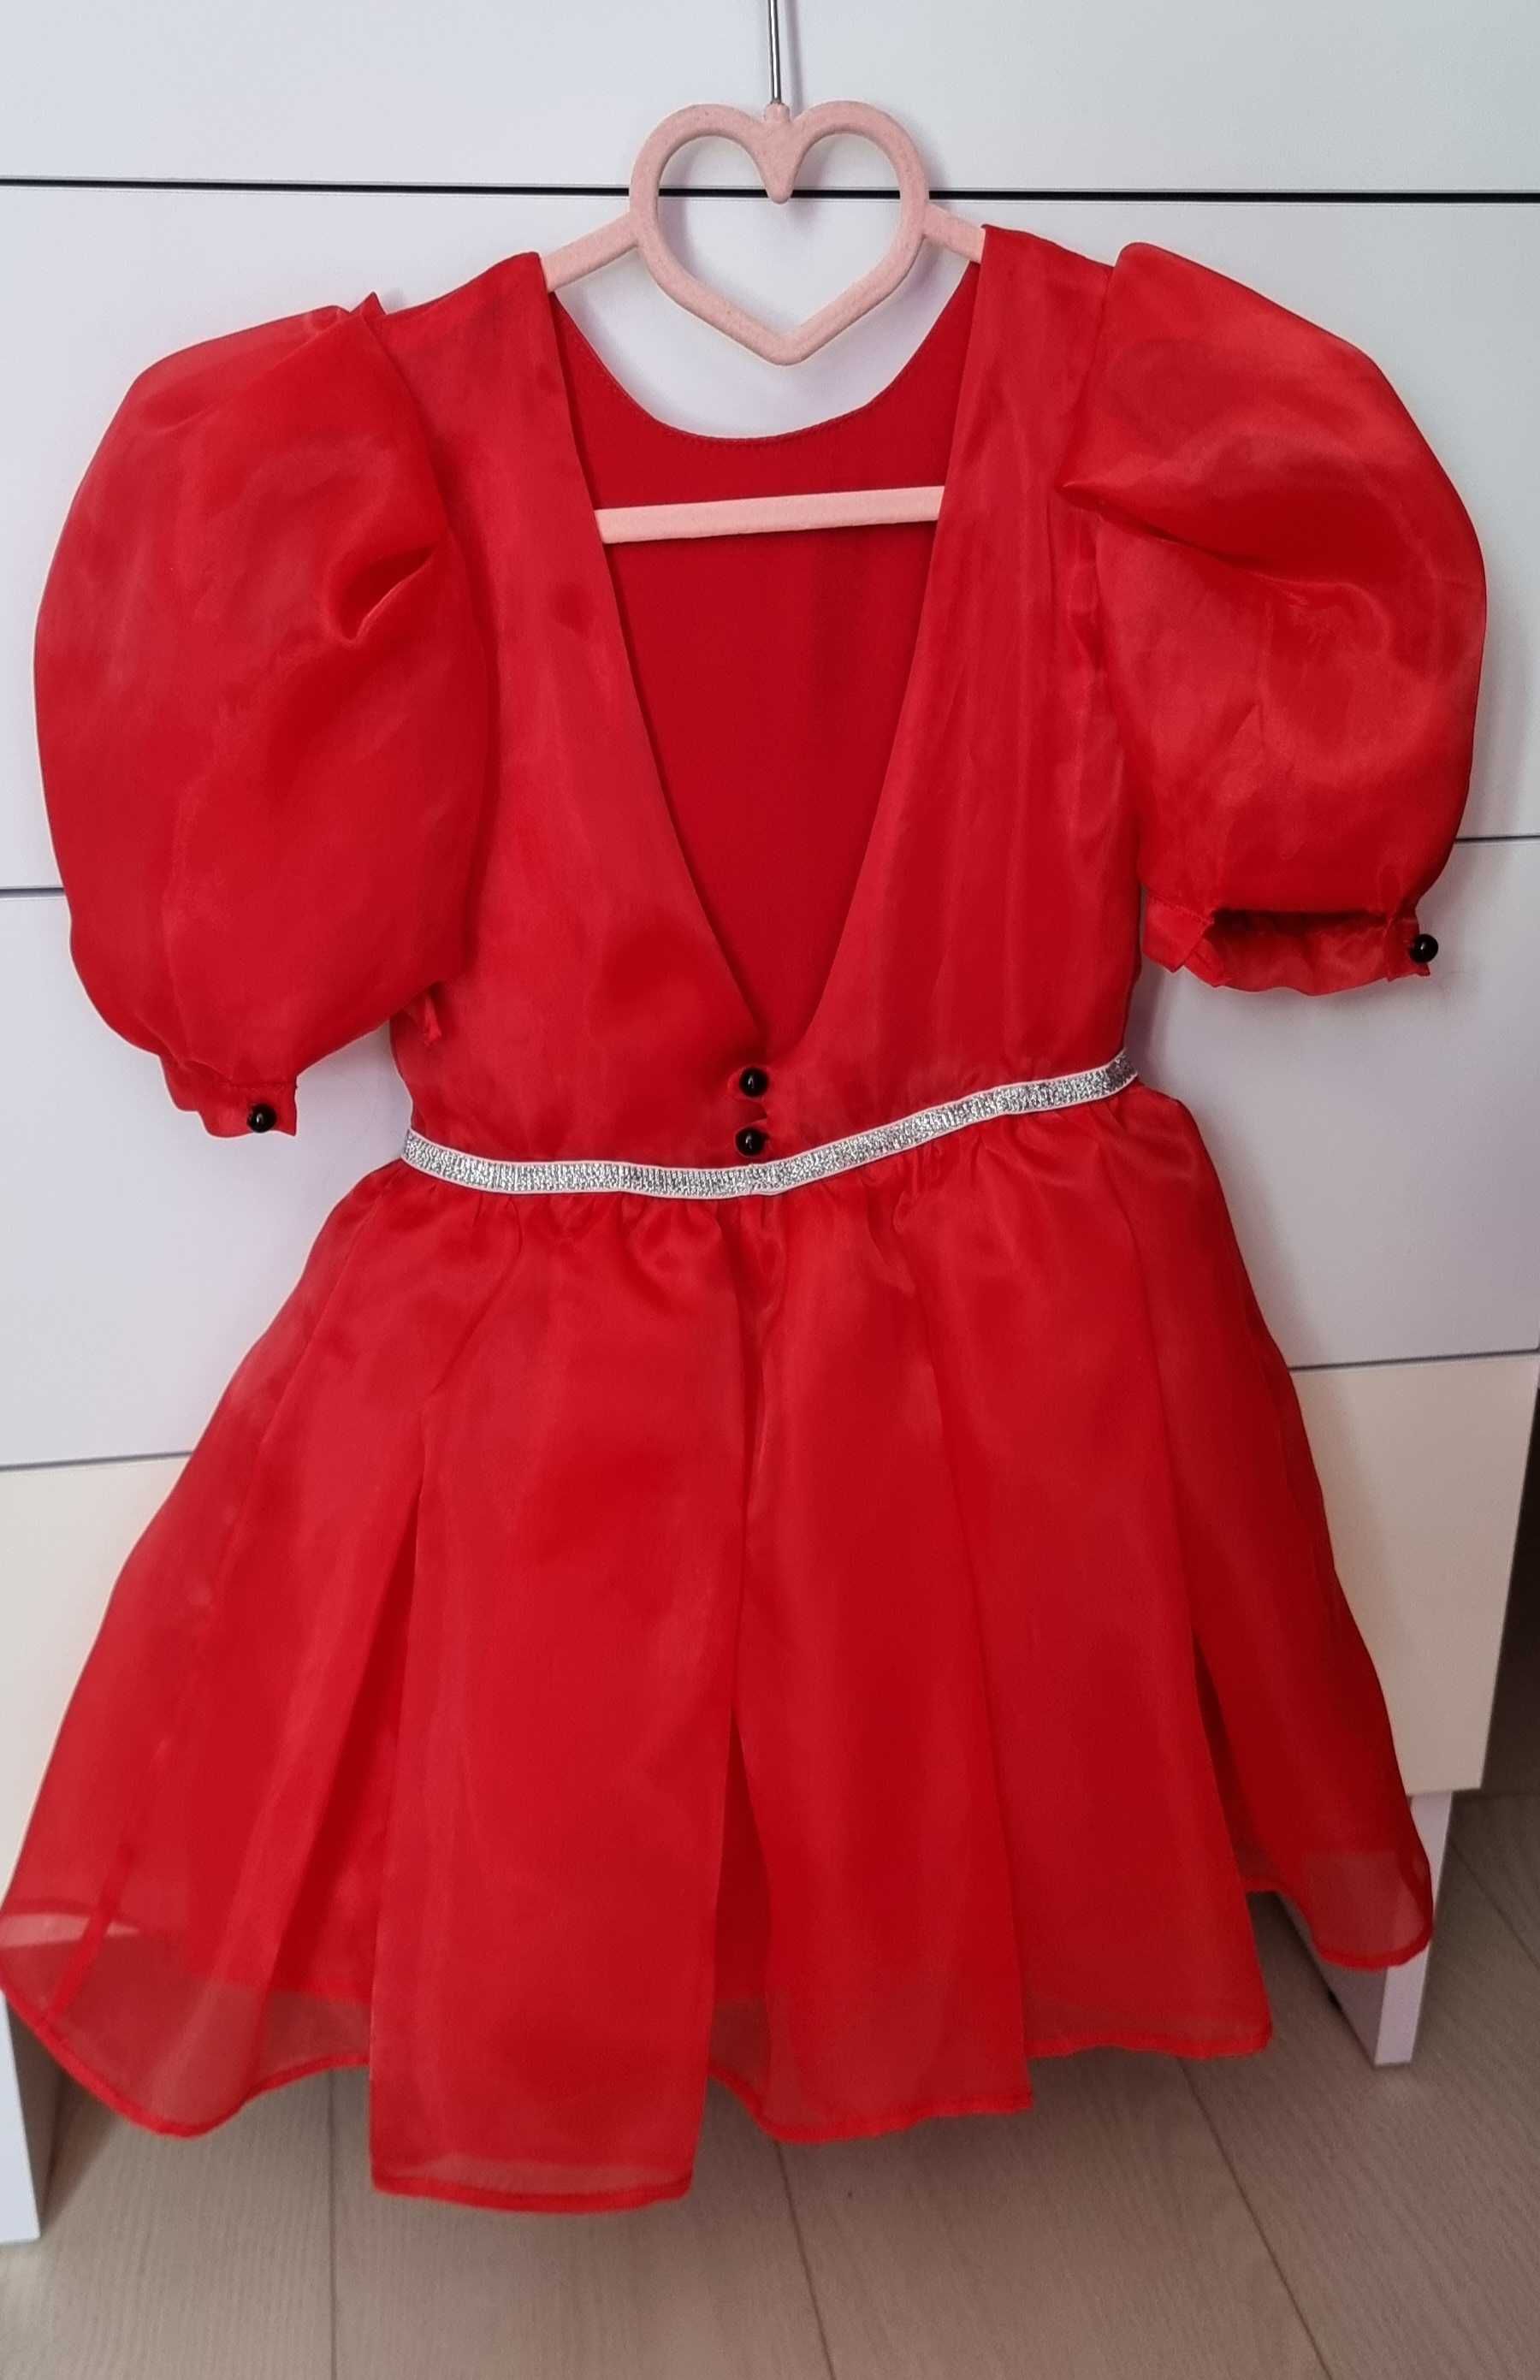 Платье нарядное красное 3-5лет 98-110см бардо 116 бежевое 98 б/у